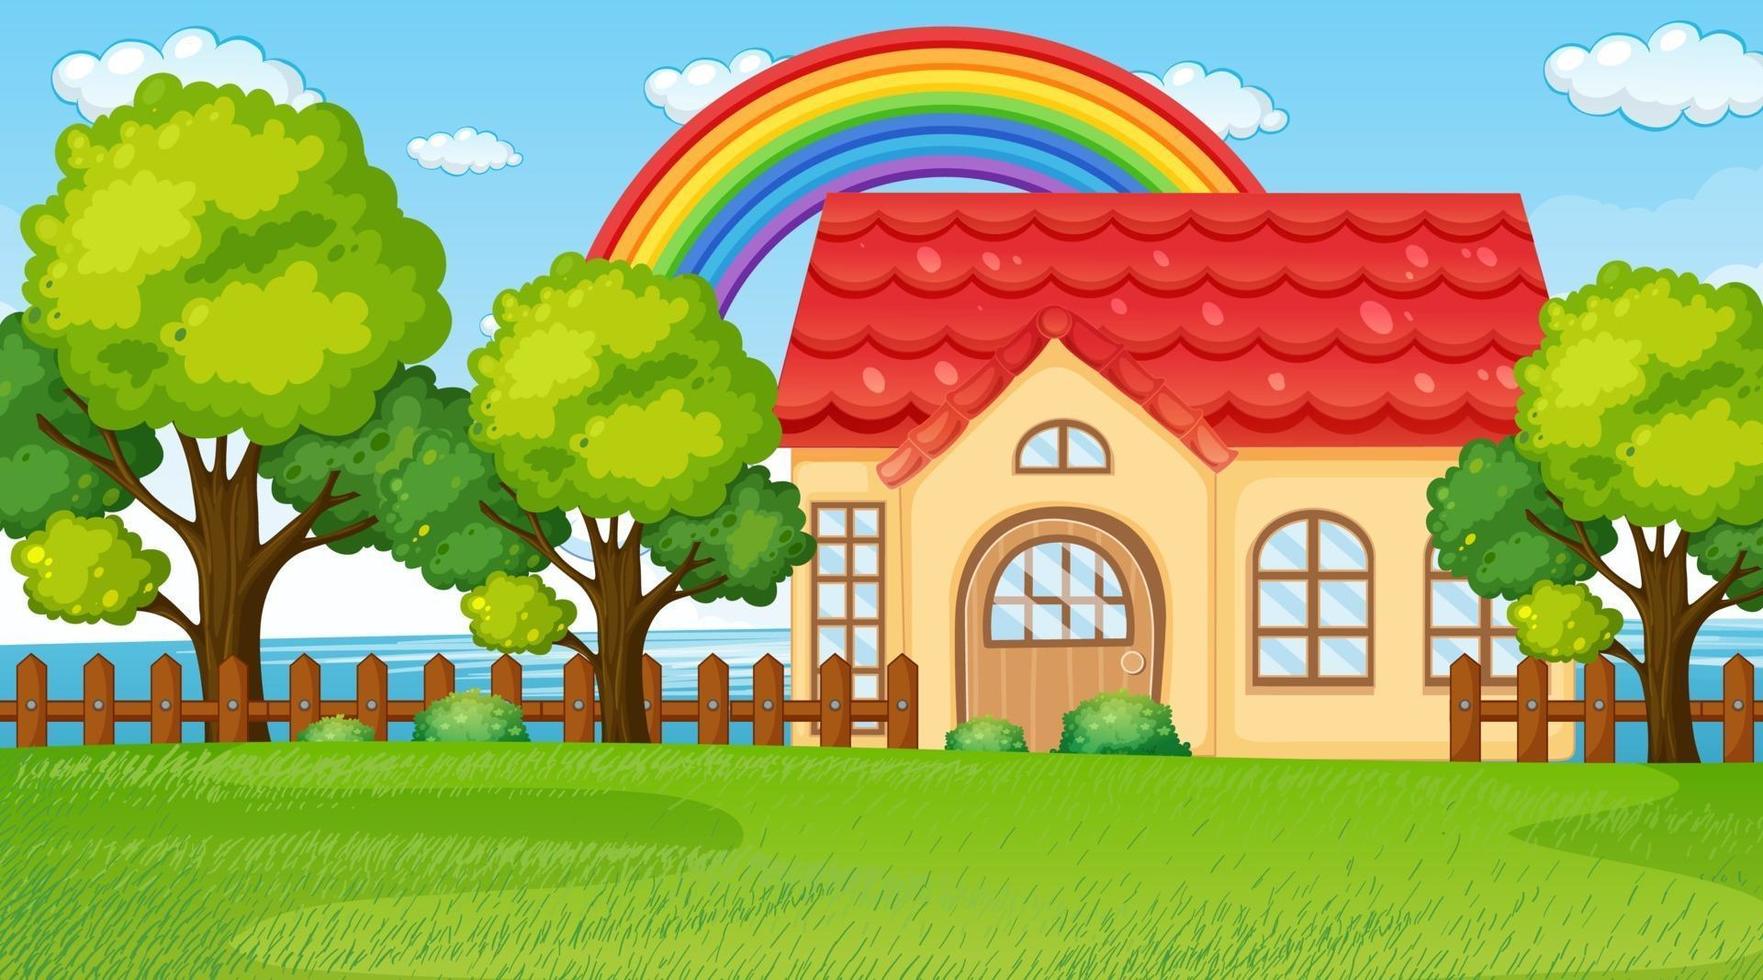 natuurlandschapsscène met een huis en een regenboog in de lucht vector